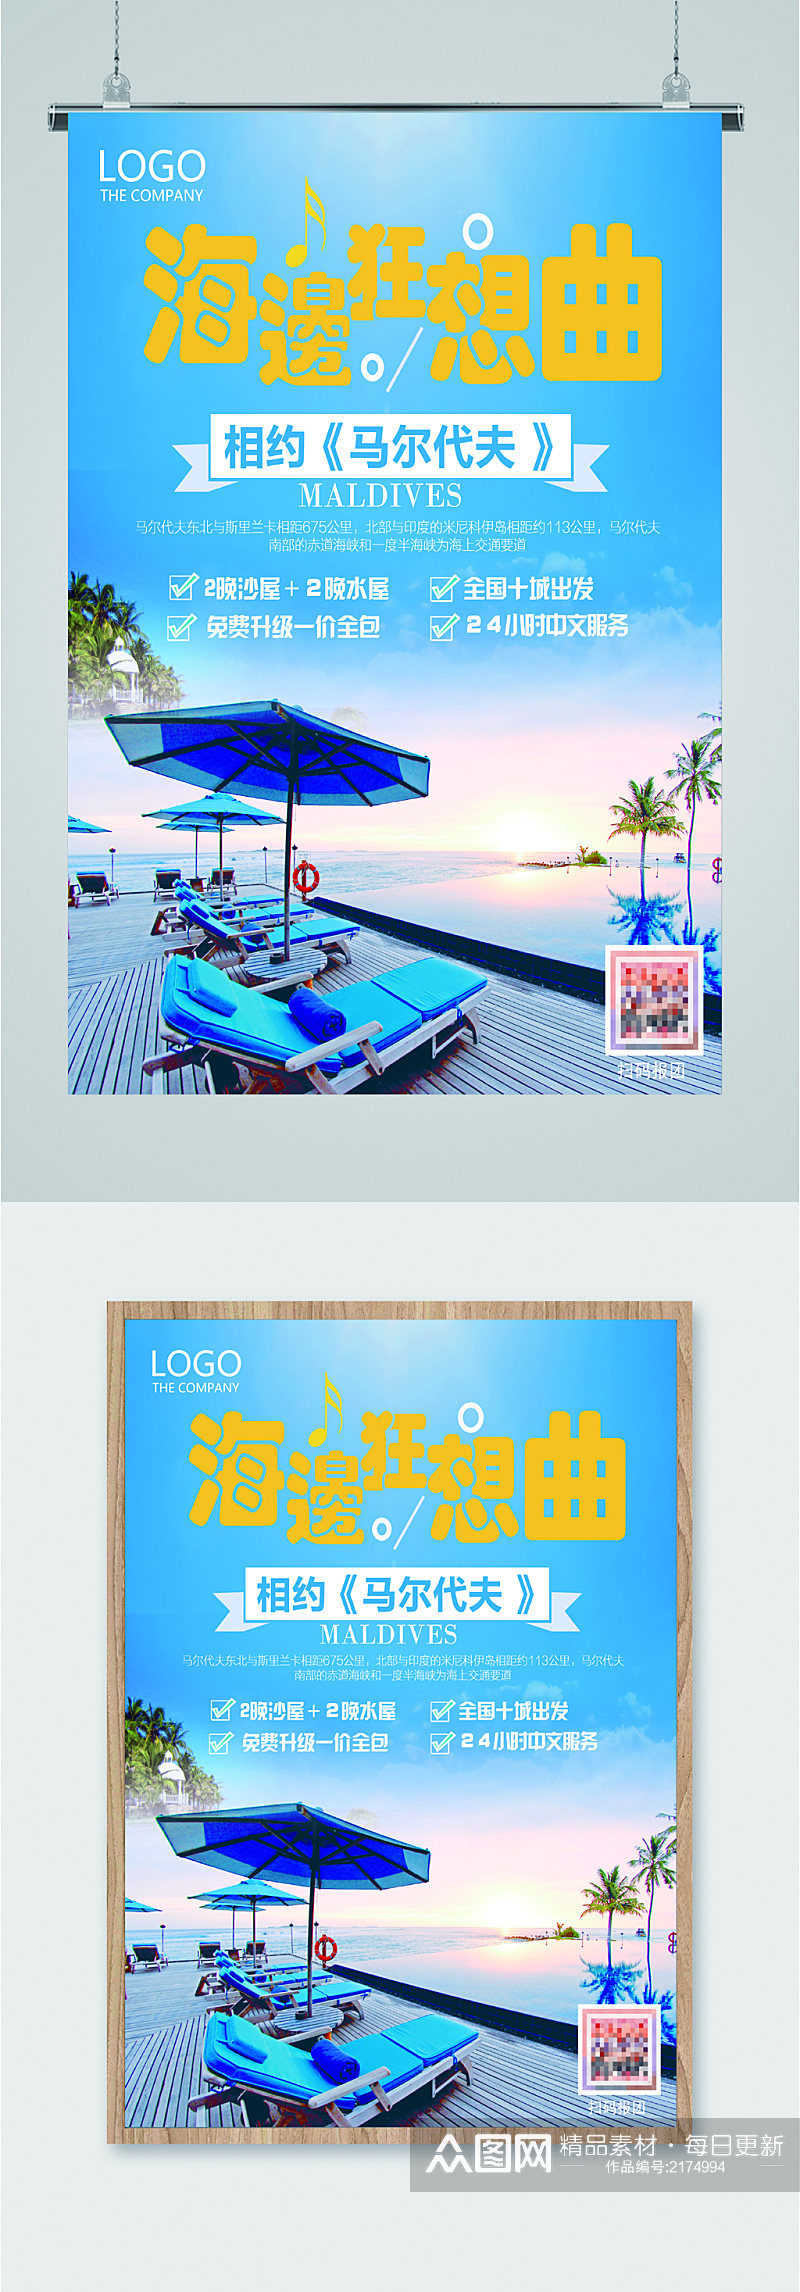 马尔代夫风景旅游海报素材